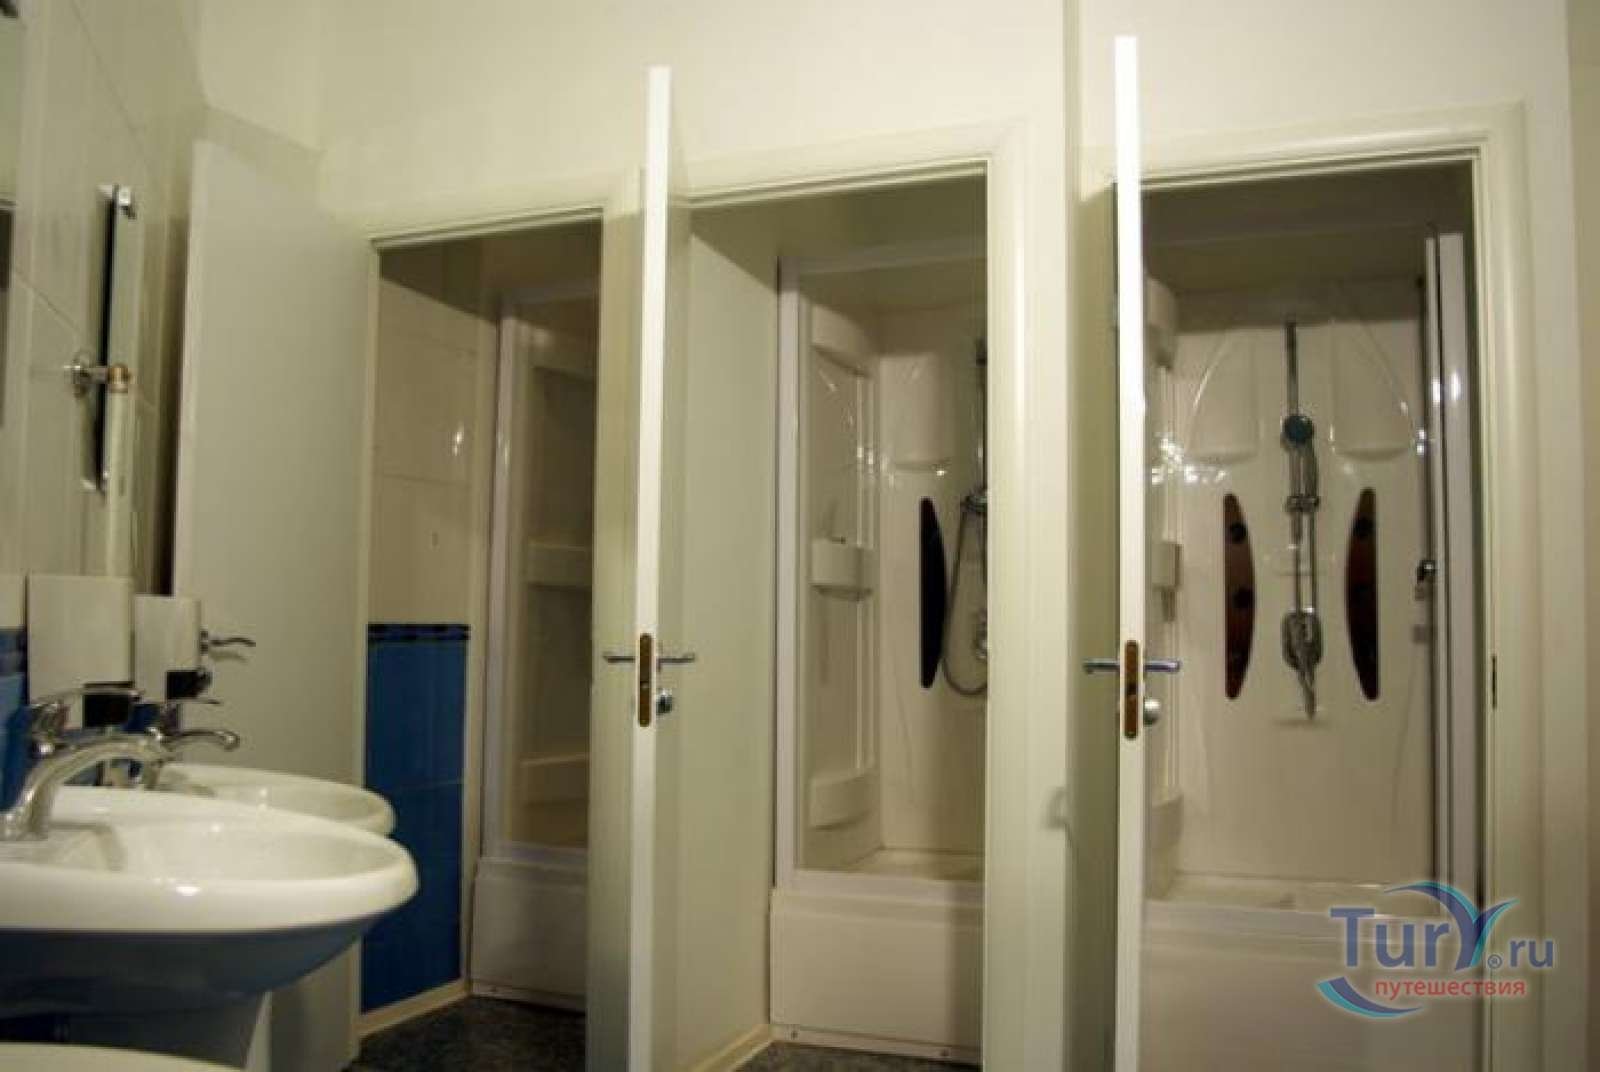 Туалет в общежитии в комнате. Душевые в общежитии. Душевая в комнате общежития. Душевая и туалет в комнате общежития. Душевая кабина в комнате общежития.